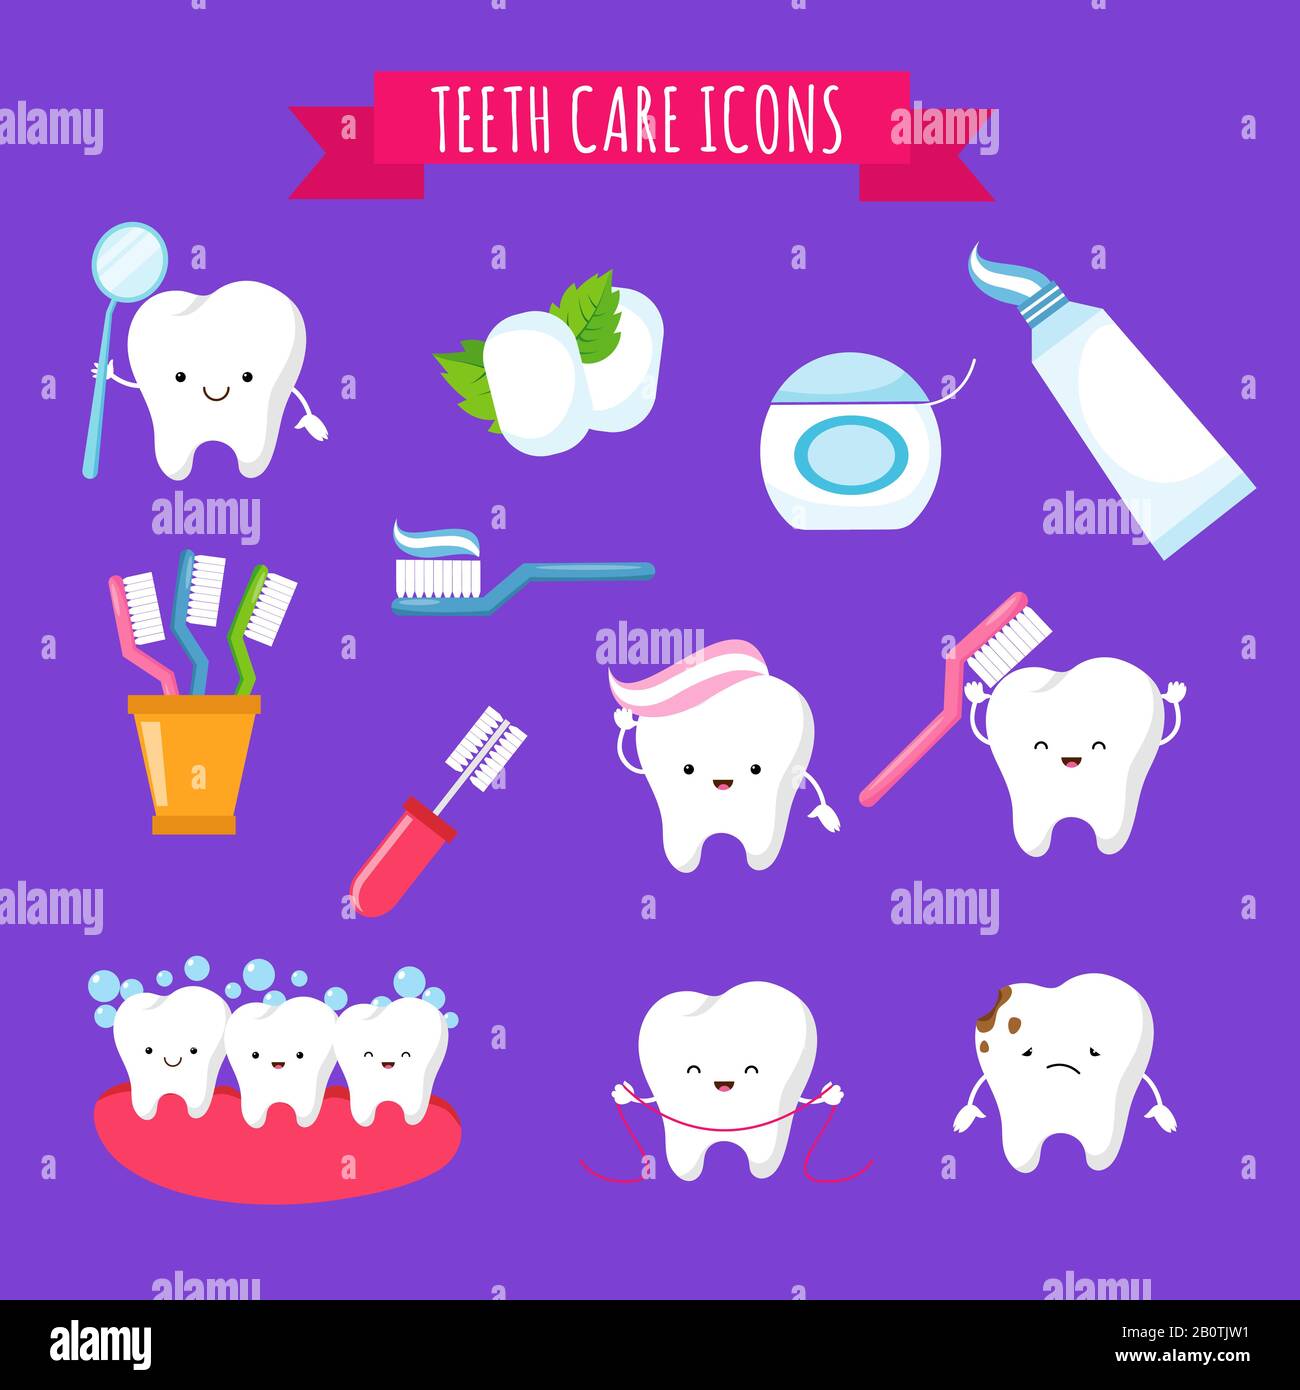 Cepillado de dientes y cuidado dental iconos de dibujos animados para niños.  Dientes divertidos con cepillo de dientes y pasta dental. Cepillado e  higiene de los dientes, ilustración vectorial Imagen Vector de